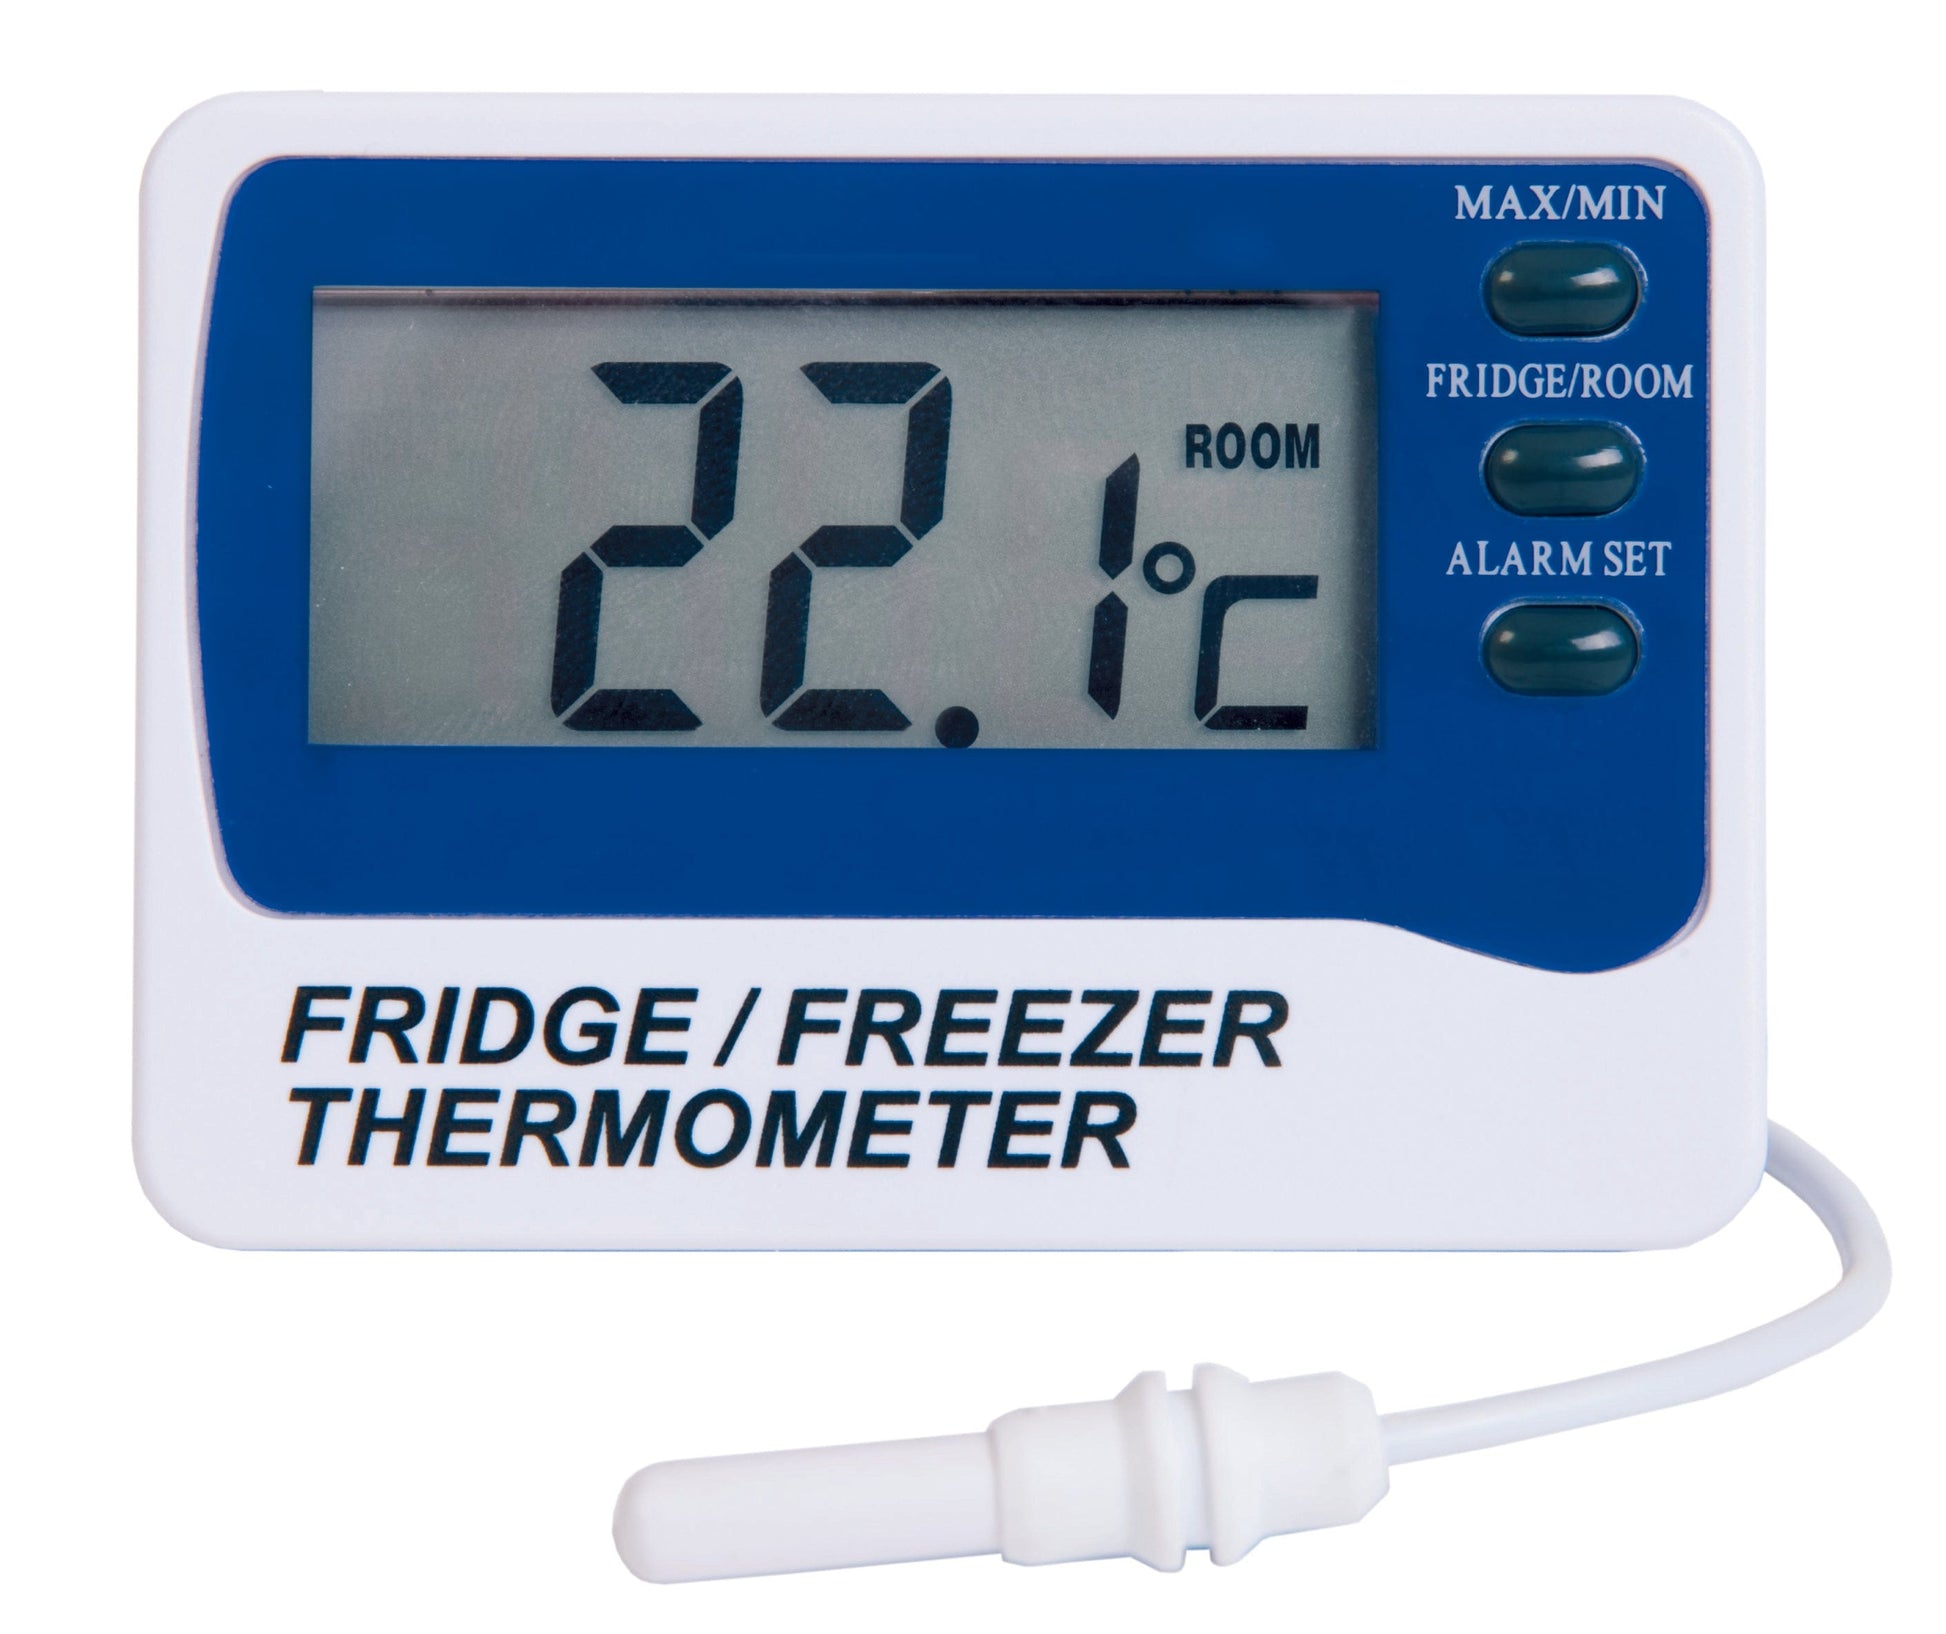 un Thermomètre numérique d'alarme Thermometer.eu pour réfrigérateur/congélateur sur fond blanc.